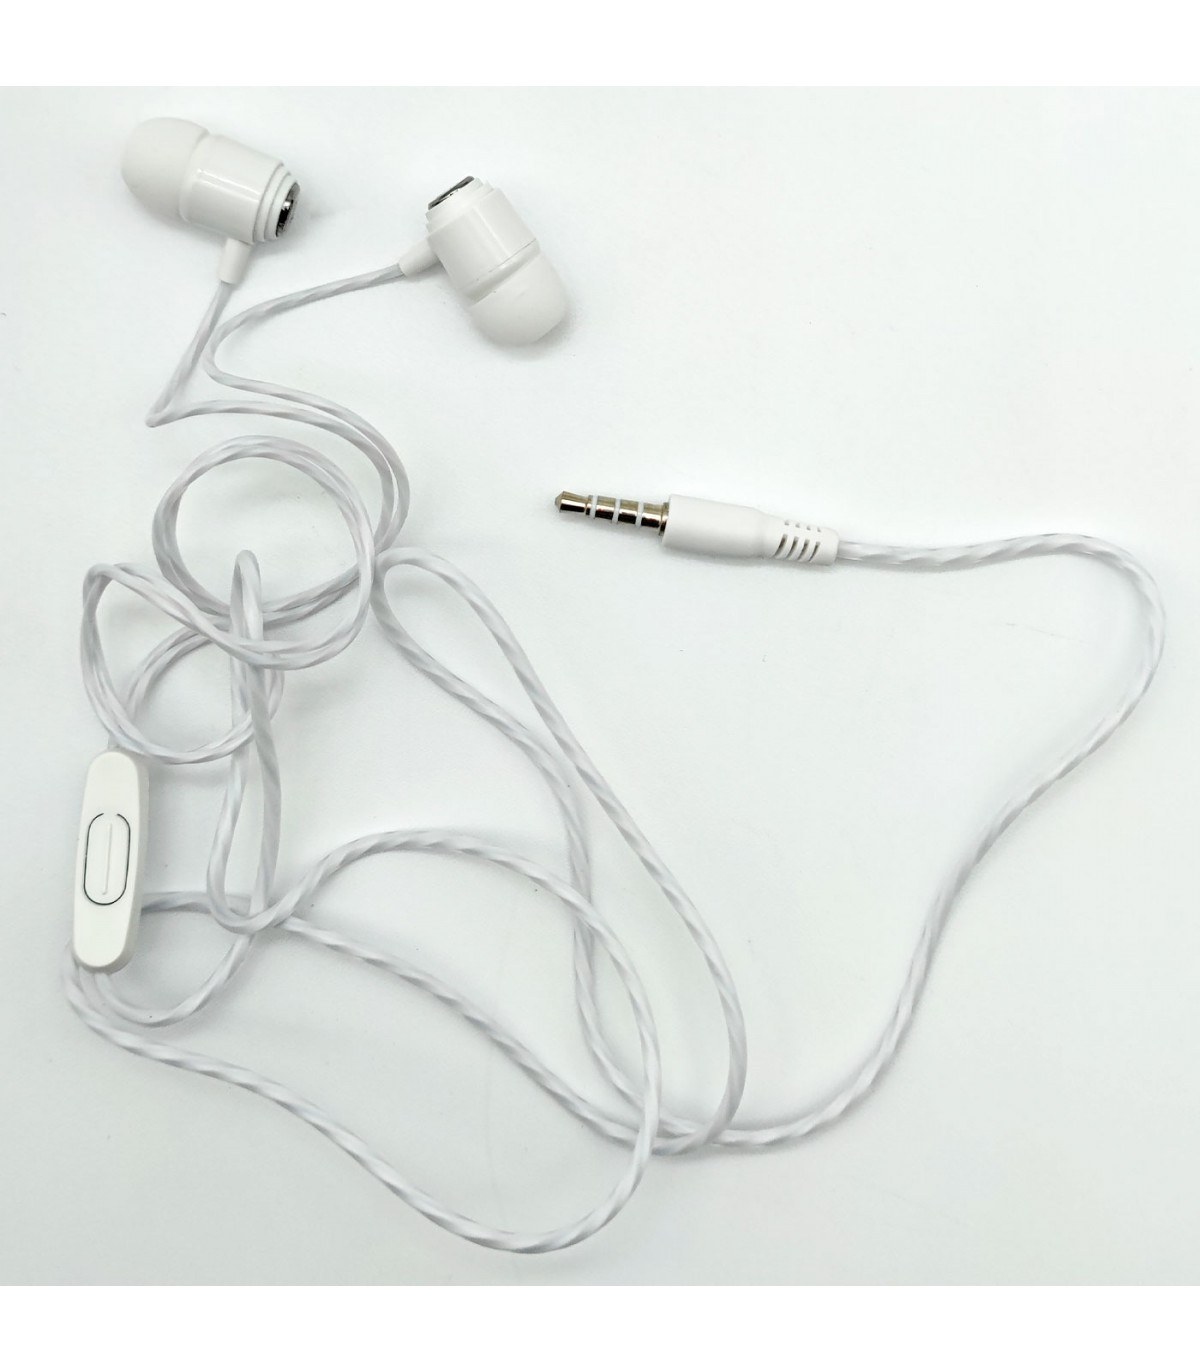 Auriculares con Cable y Micrófono Jack de 3,5 mm Magnéticos in Ear Estéreo  Control de Volumen Cascos Compatible con Android i-Phone Sam-Sung Hua-wei